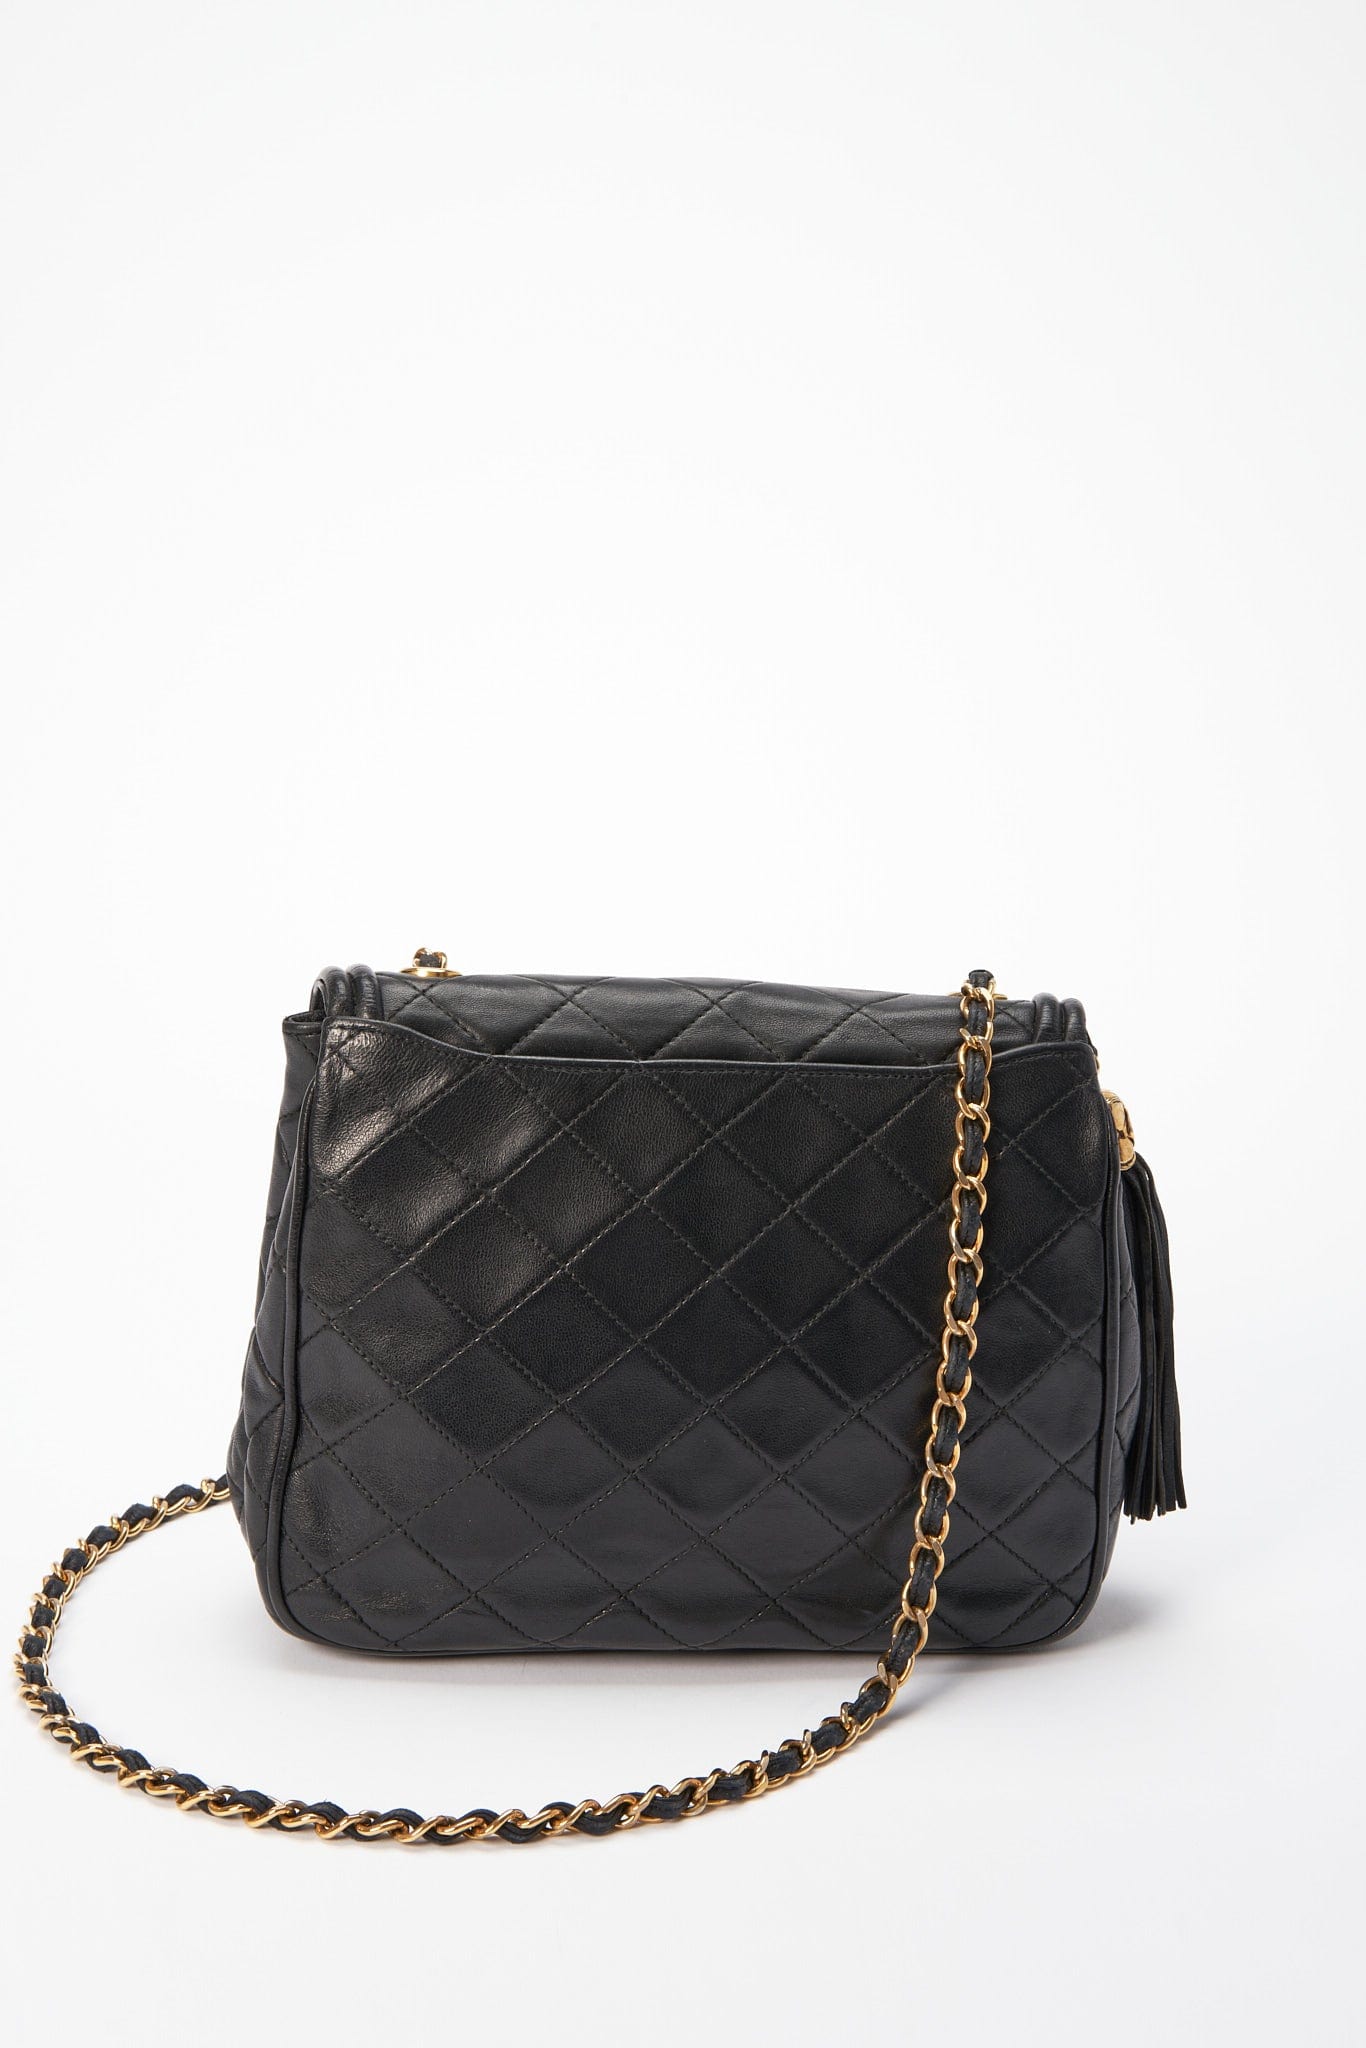 Vintage CC Quilted Leather Tassel Shopper Bag Black for Sale in